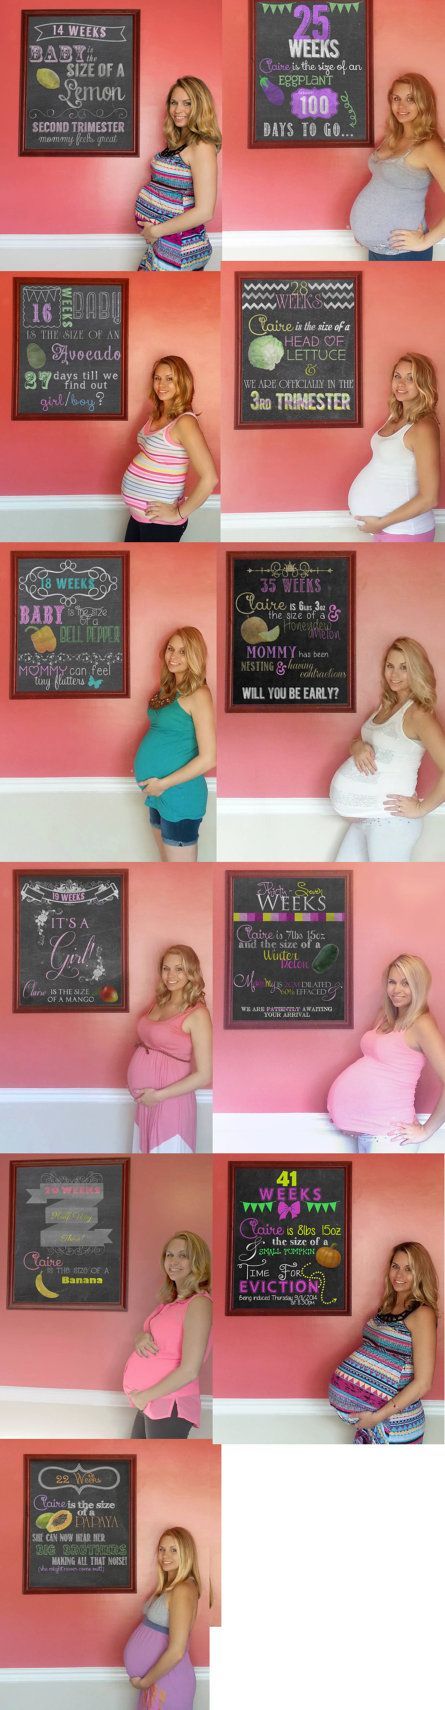 6 weeks – 40 weeks – Custom Weekly Pregnancy Chalkboard Updates  by CayteeRoseDesigns.